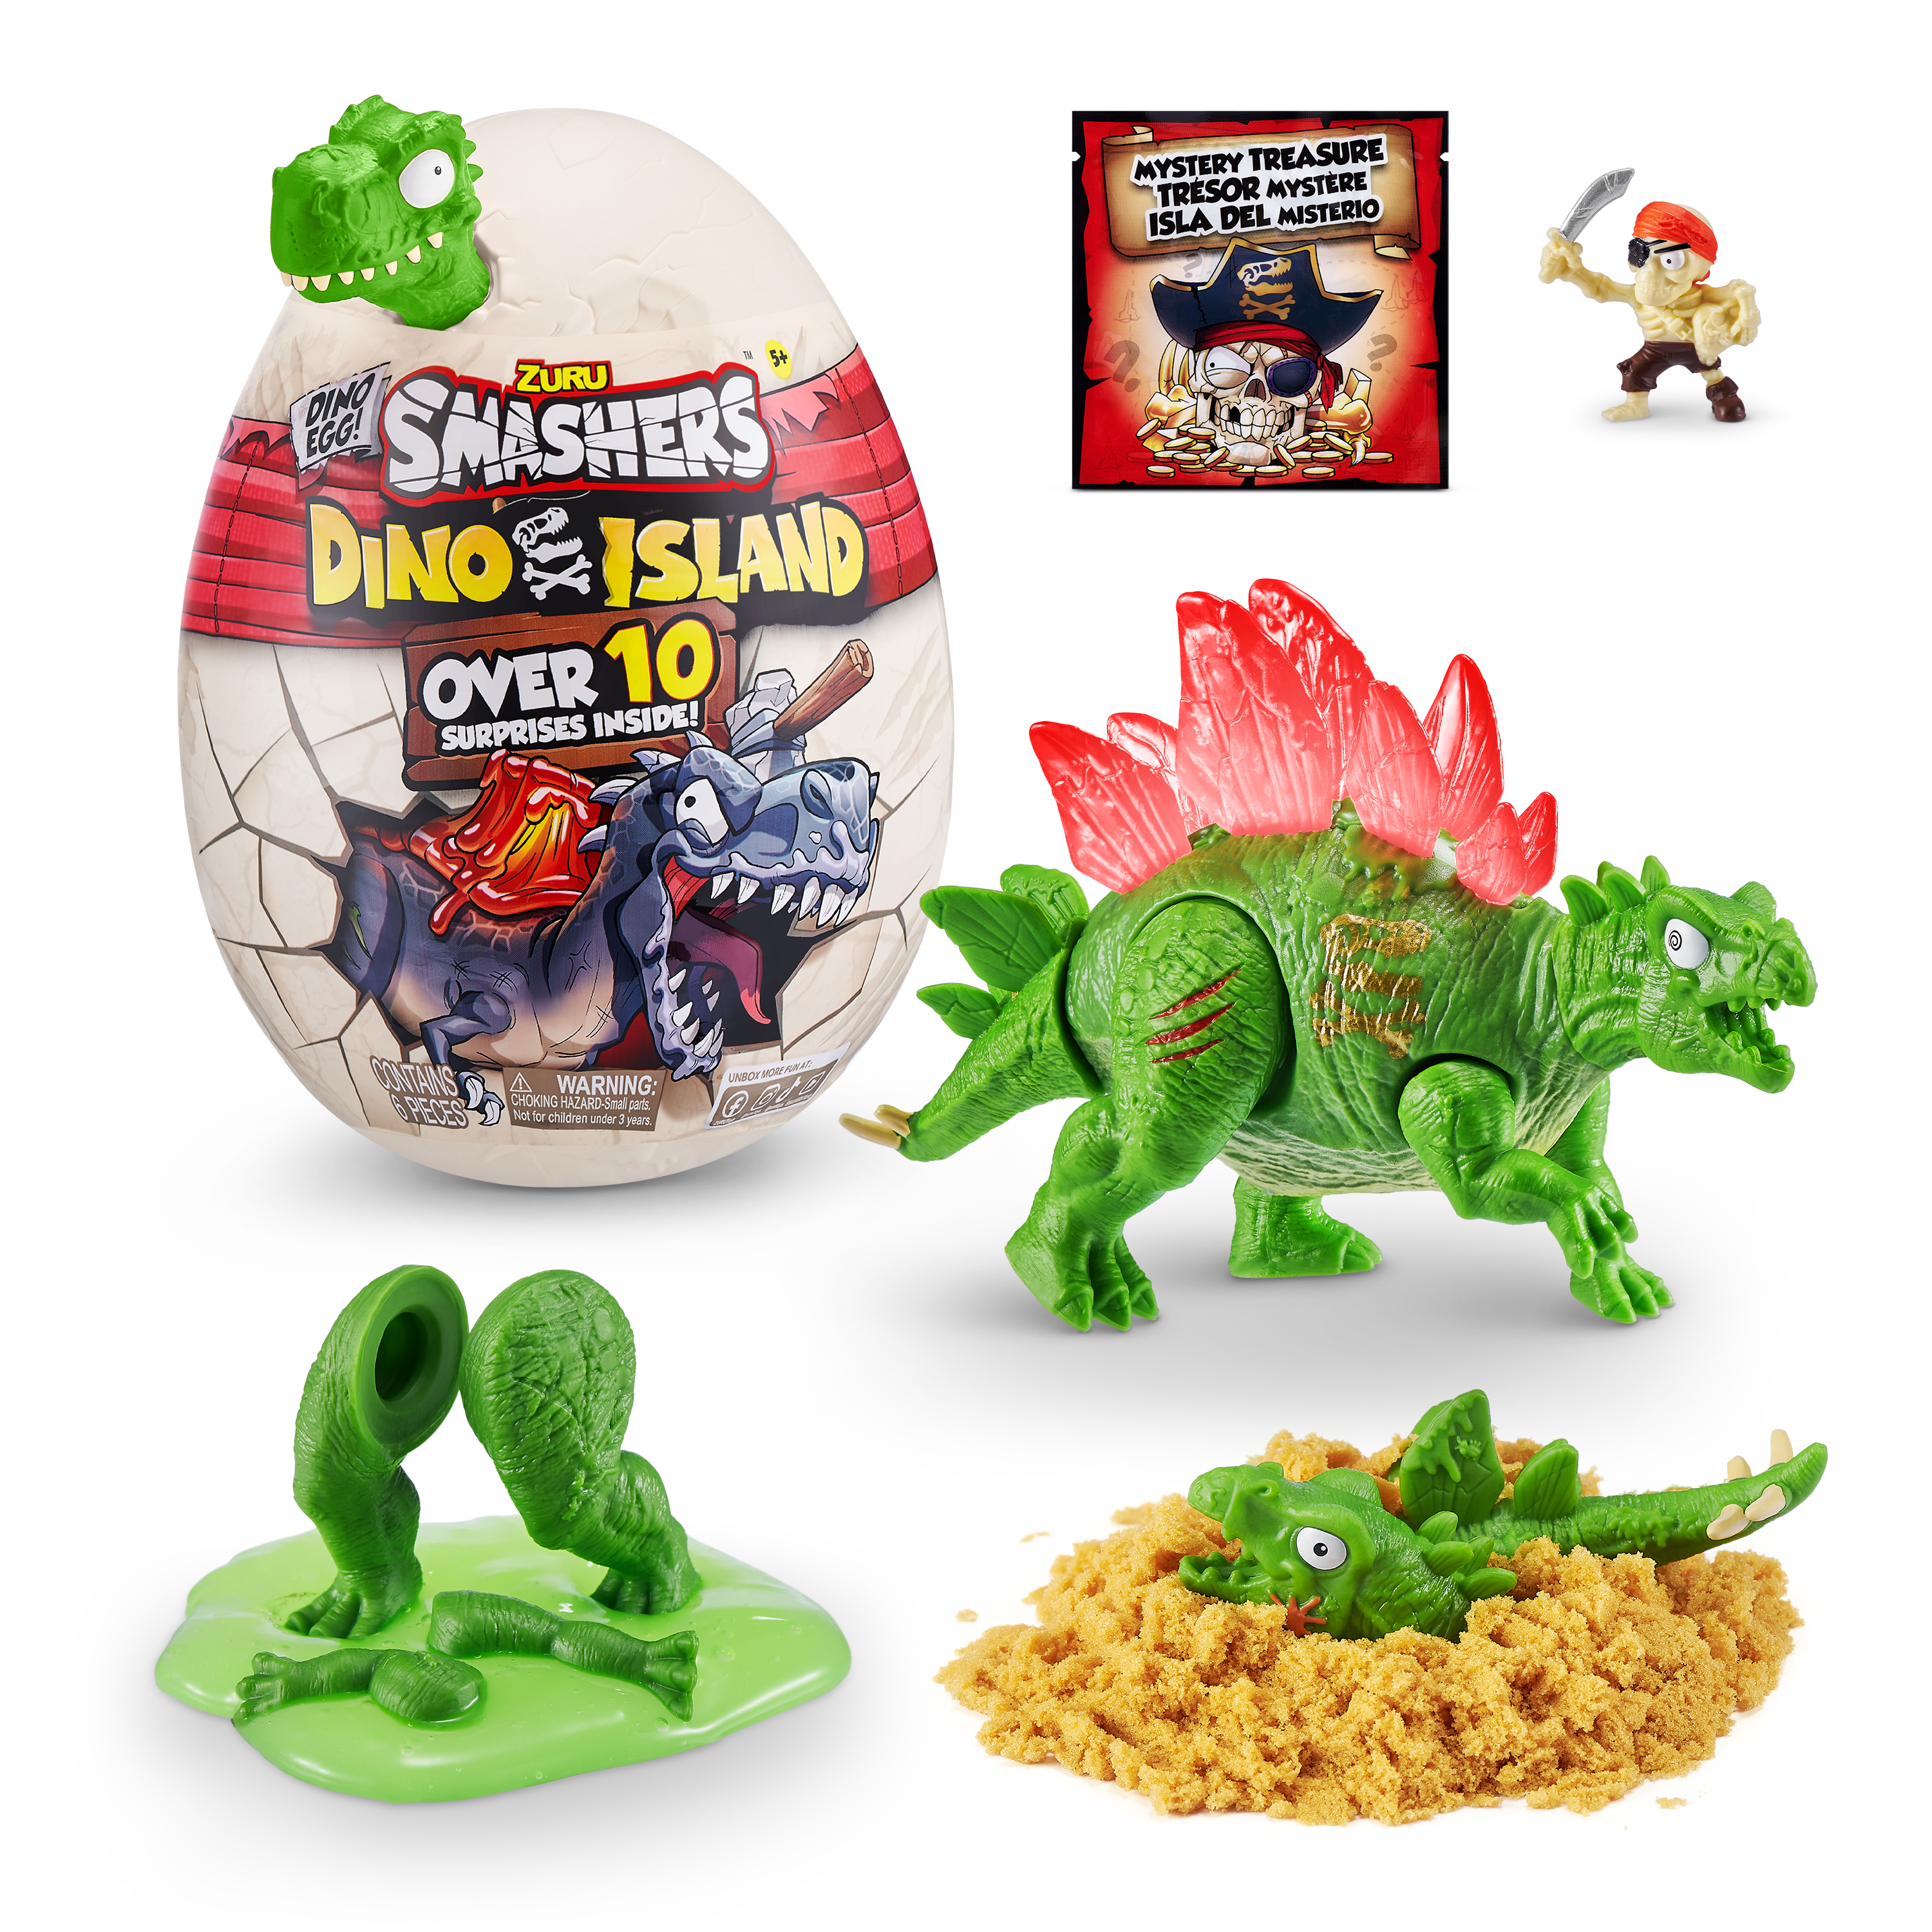 Игровой набор  Smashers Dino Island сюрприз в яйце малое яйцо, 10 сюрпризов Динозавр зеленый— магазин-салютов.рус